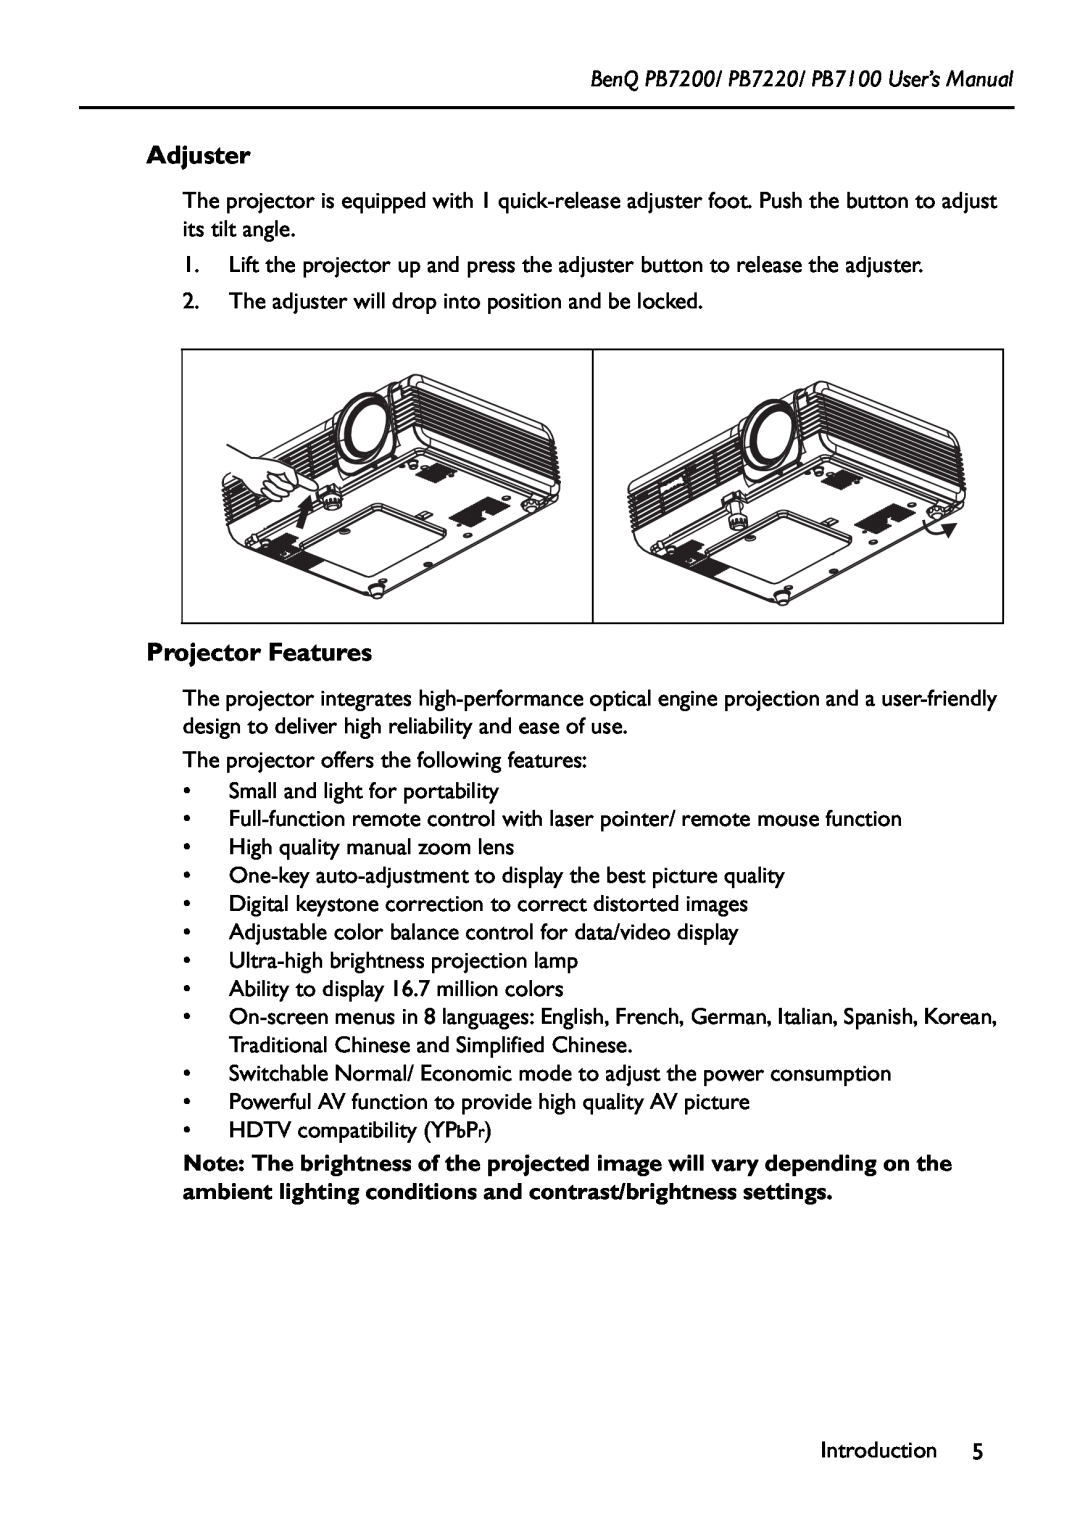 BenQ manual Adjuster, Projector Features, BenQ PB7200/ PB7220/ PB7100 User’s Manual 